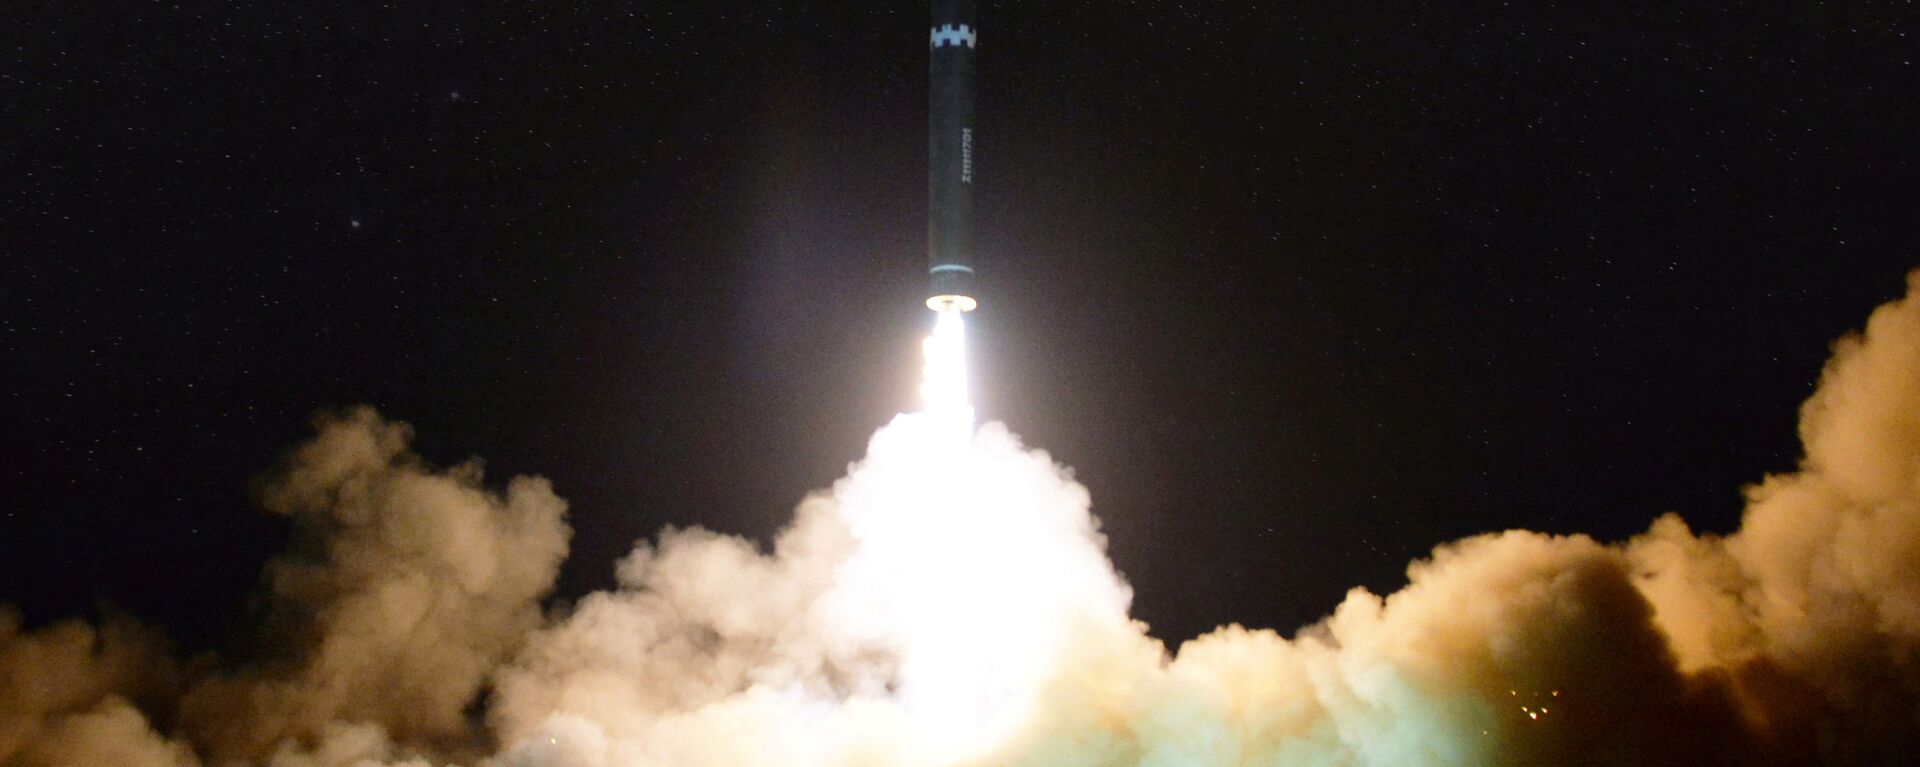 اطلاق صاروخ باليستي - بيونغ يانغ - كوريا الشمالية 29 نوفمبر/ تشرين الثاني 2017 - سبوتنيك عربي, 1920, 26.02.2022